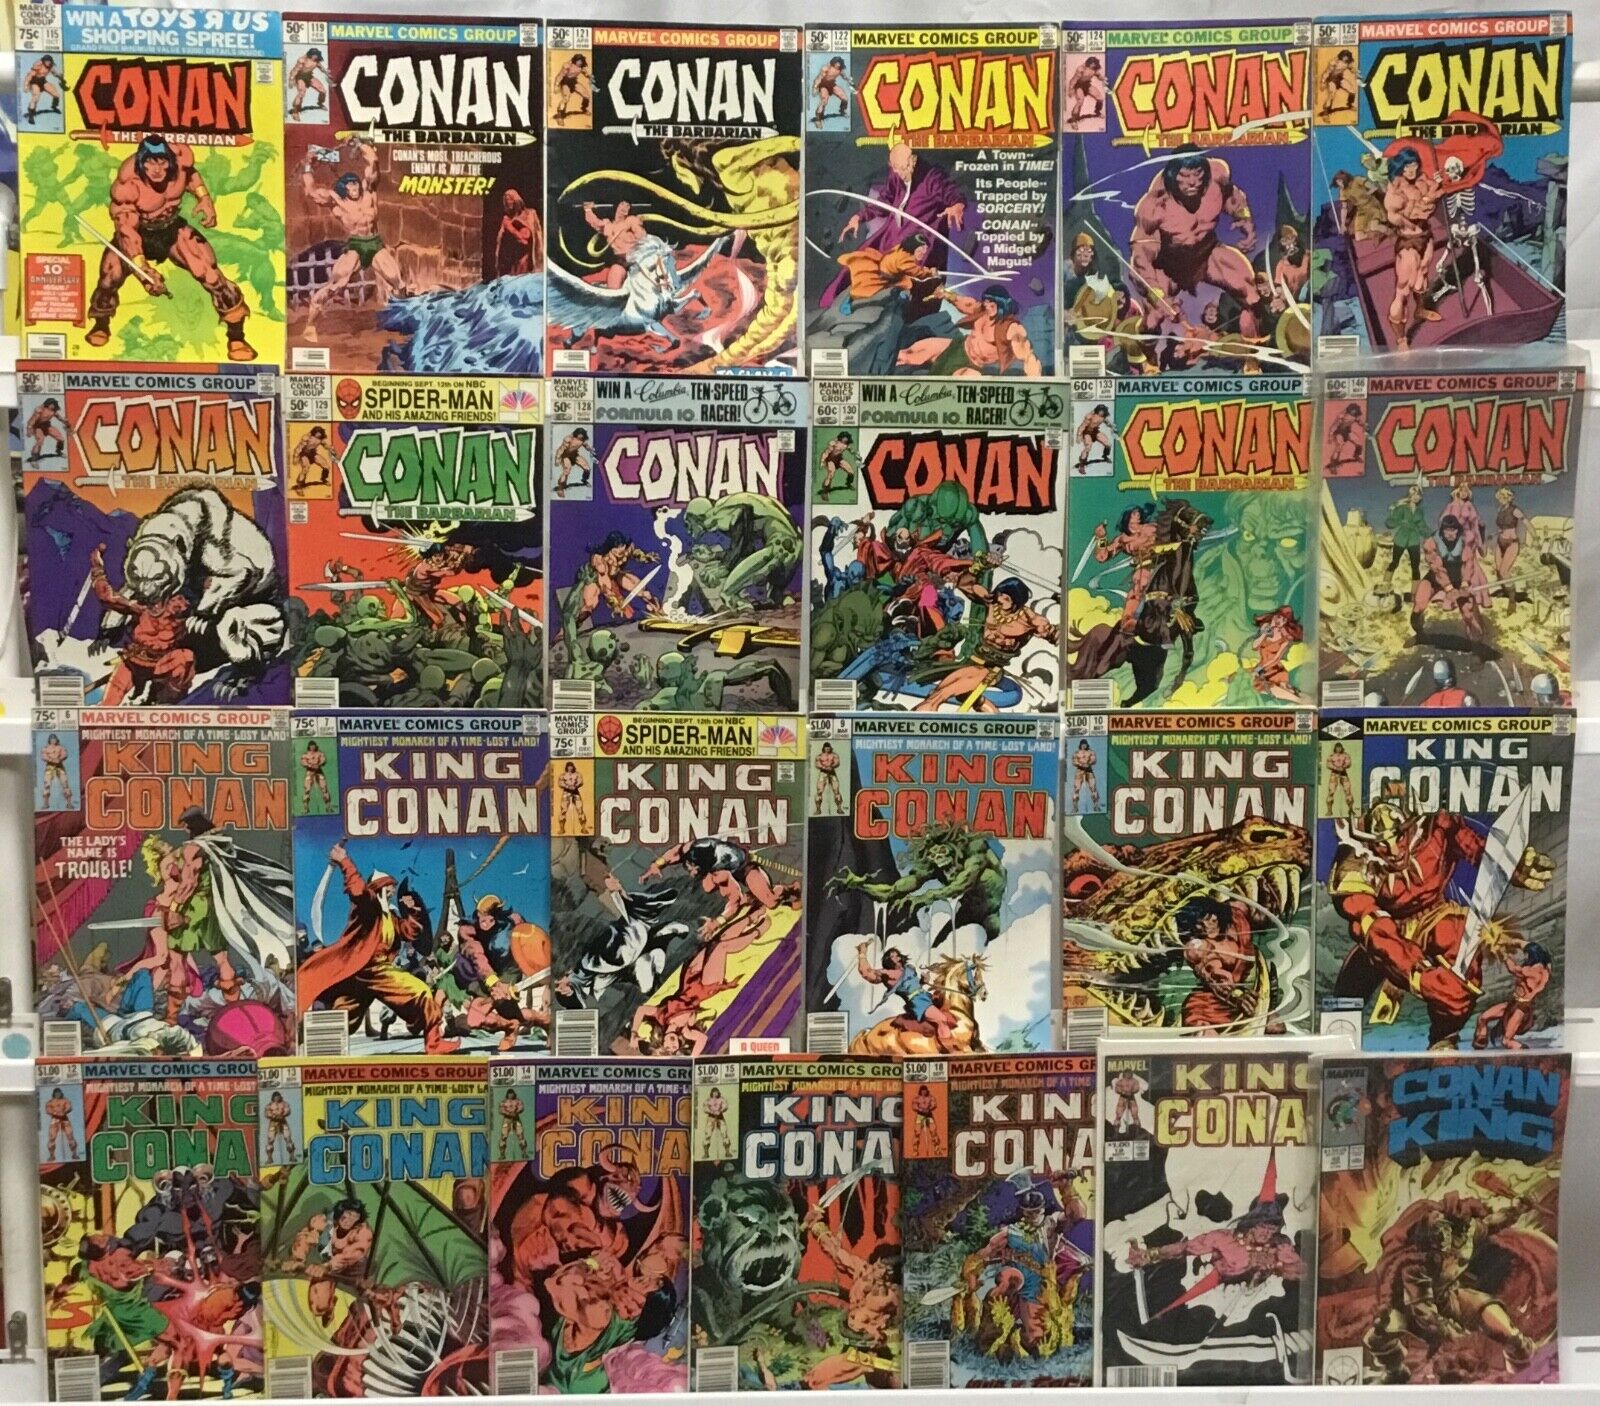 Marvel Comics - Conan / King Conan - Comic Book Lot of 25 Issues